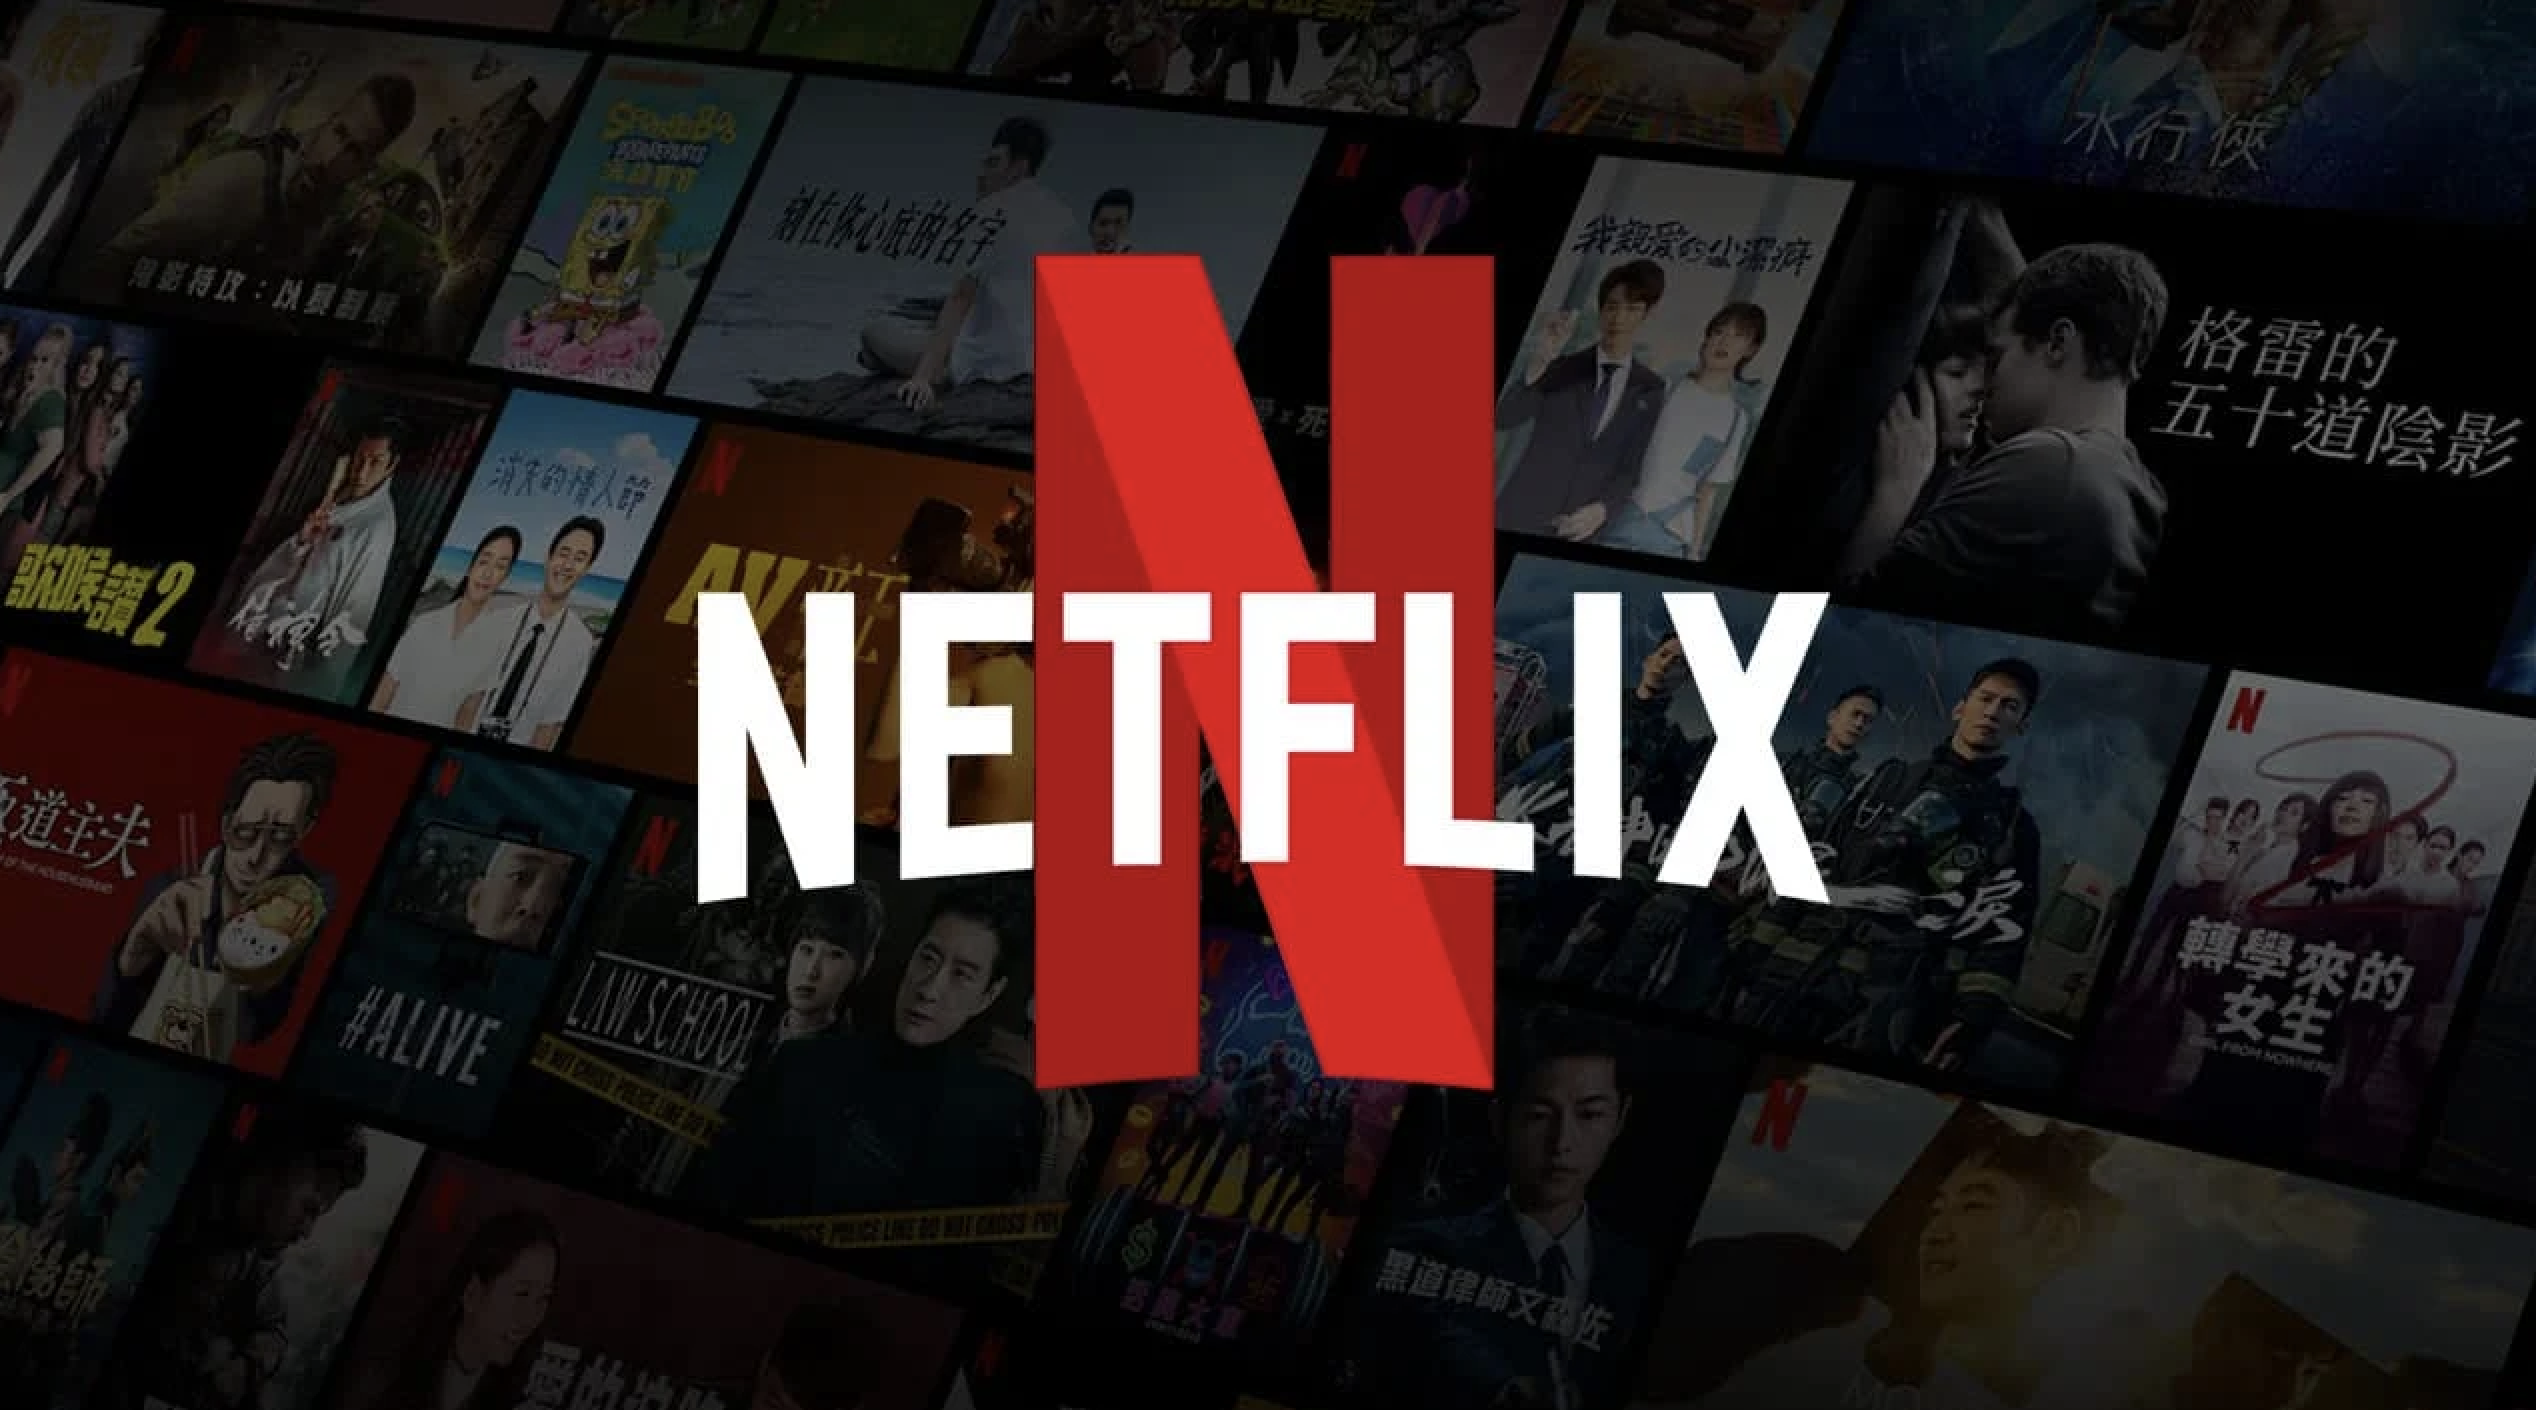     Netflix dépasse les attentes avec près de 6 millions de nouveaux abonnés

